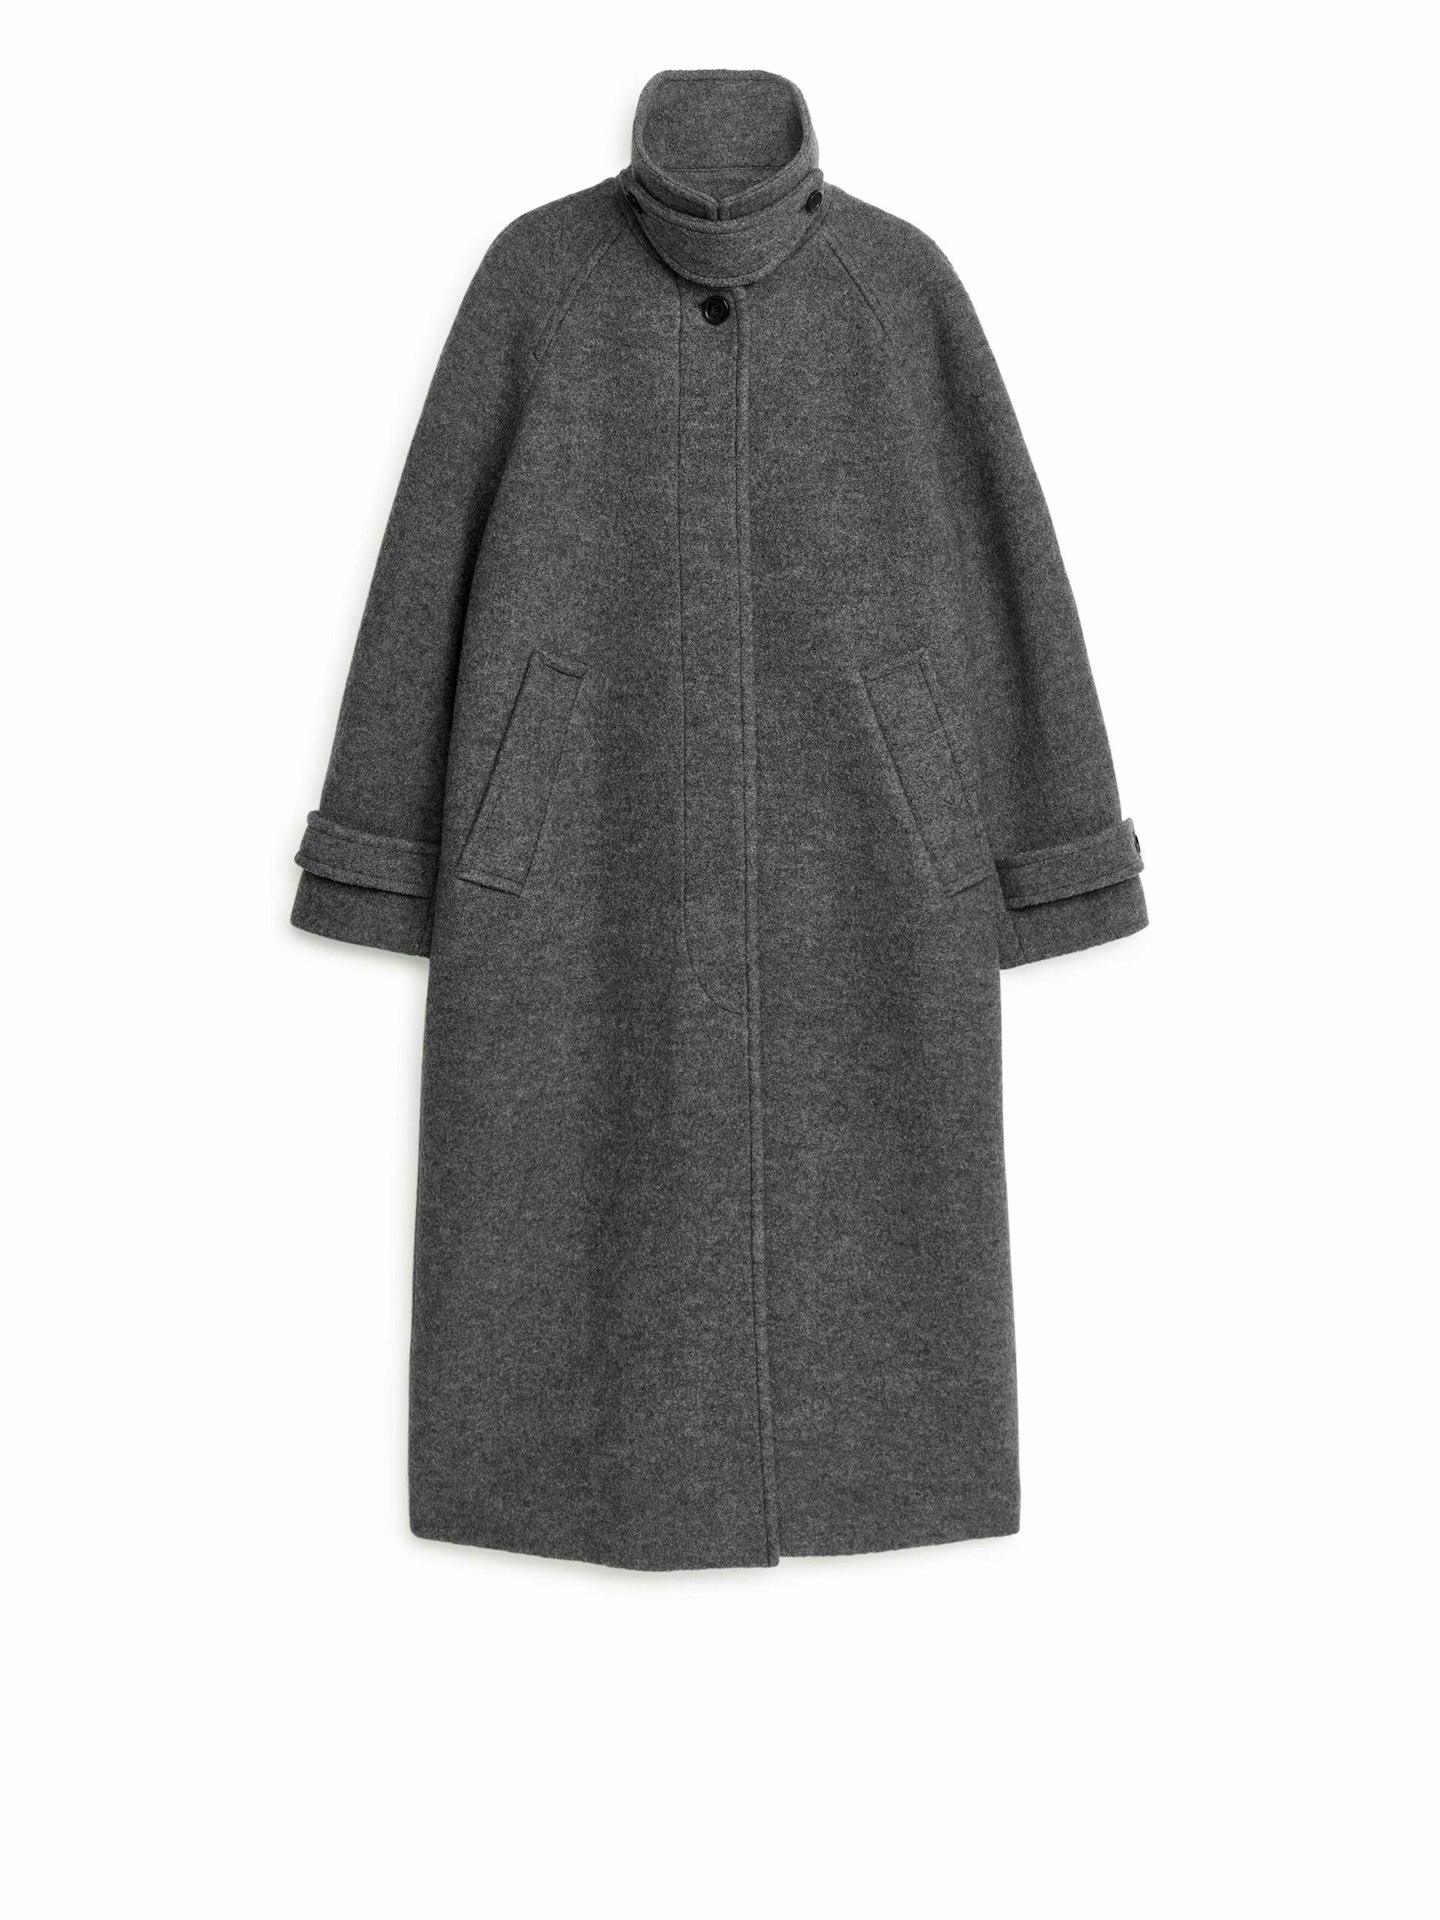 ARKET wool coat